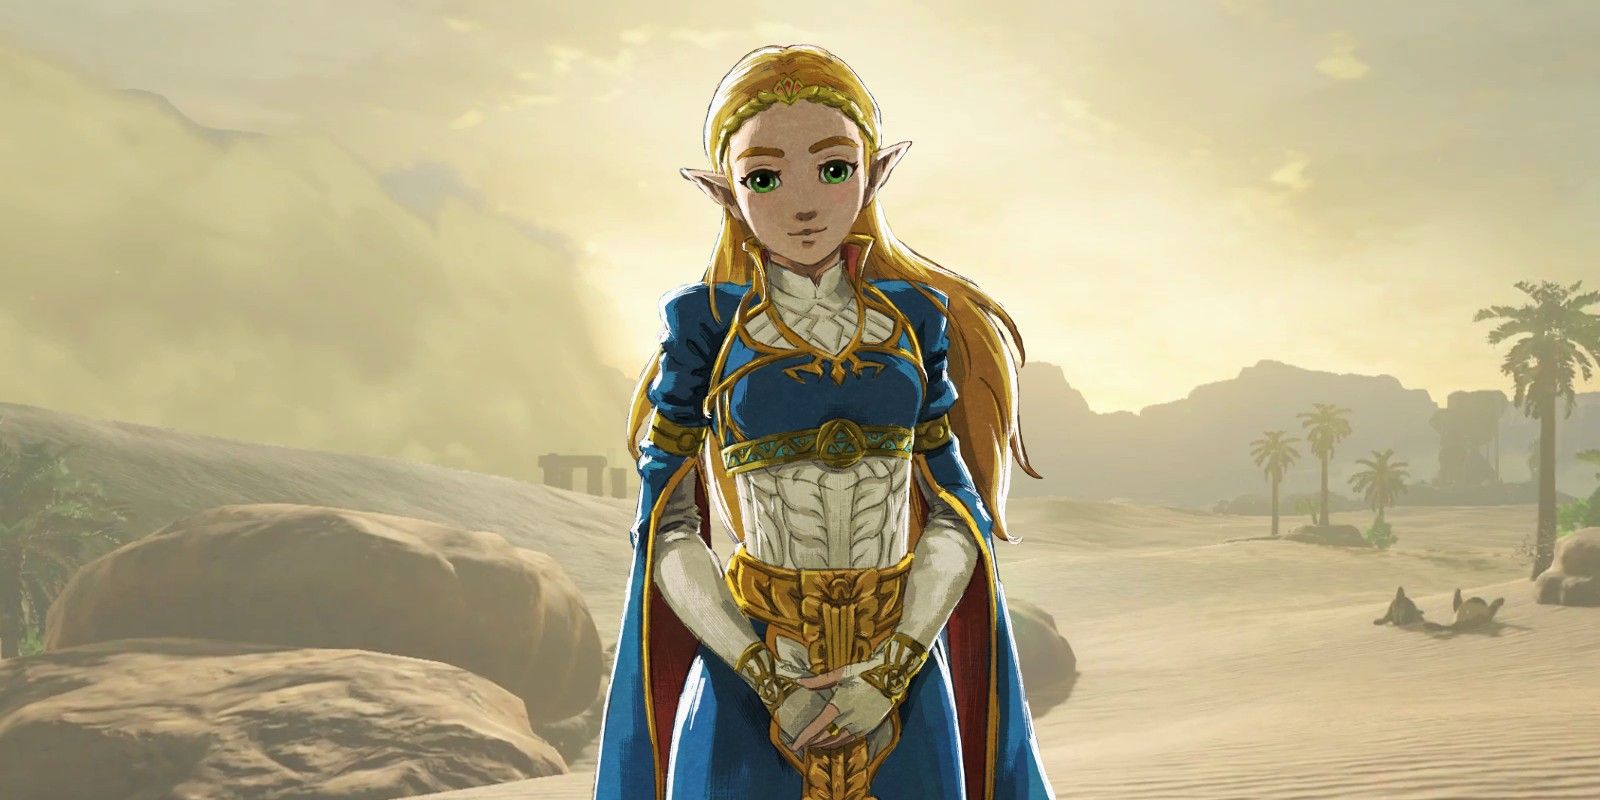 BOTW's Zelda Looks Incredible In Gerudo-style Cosplay